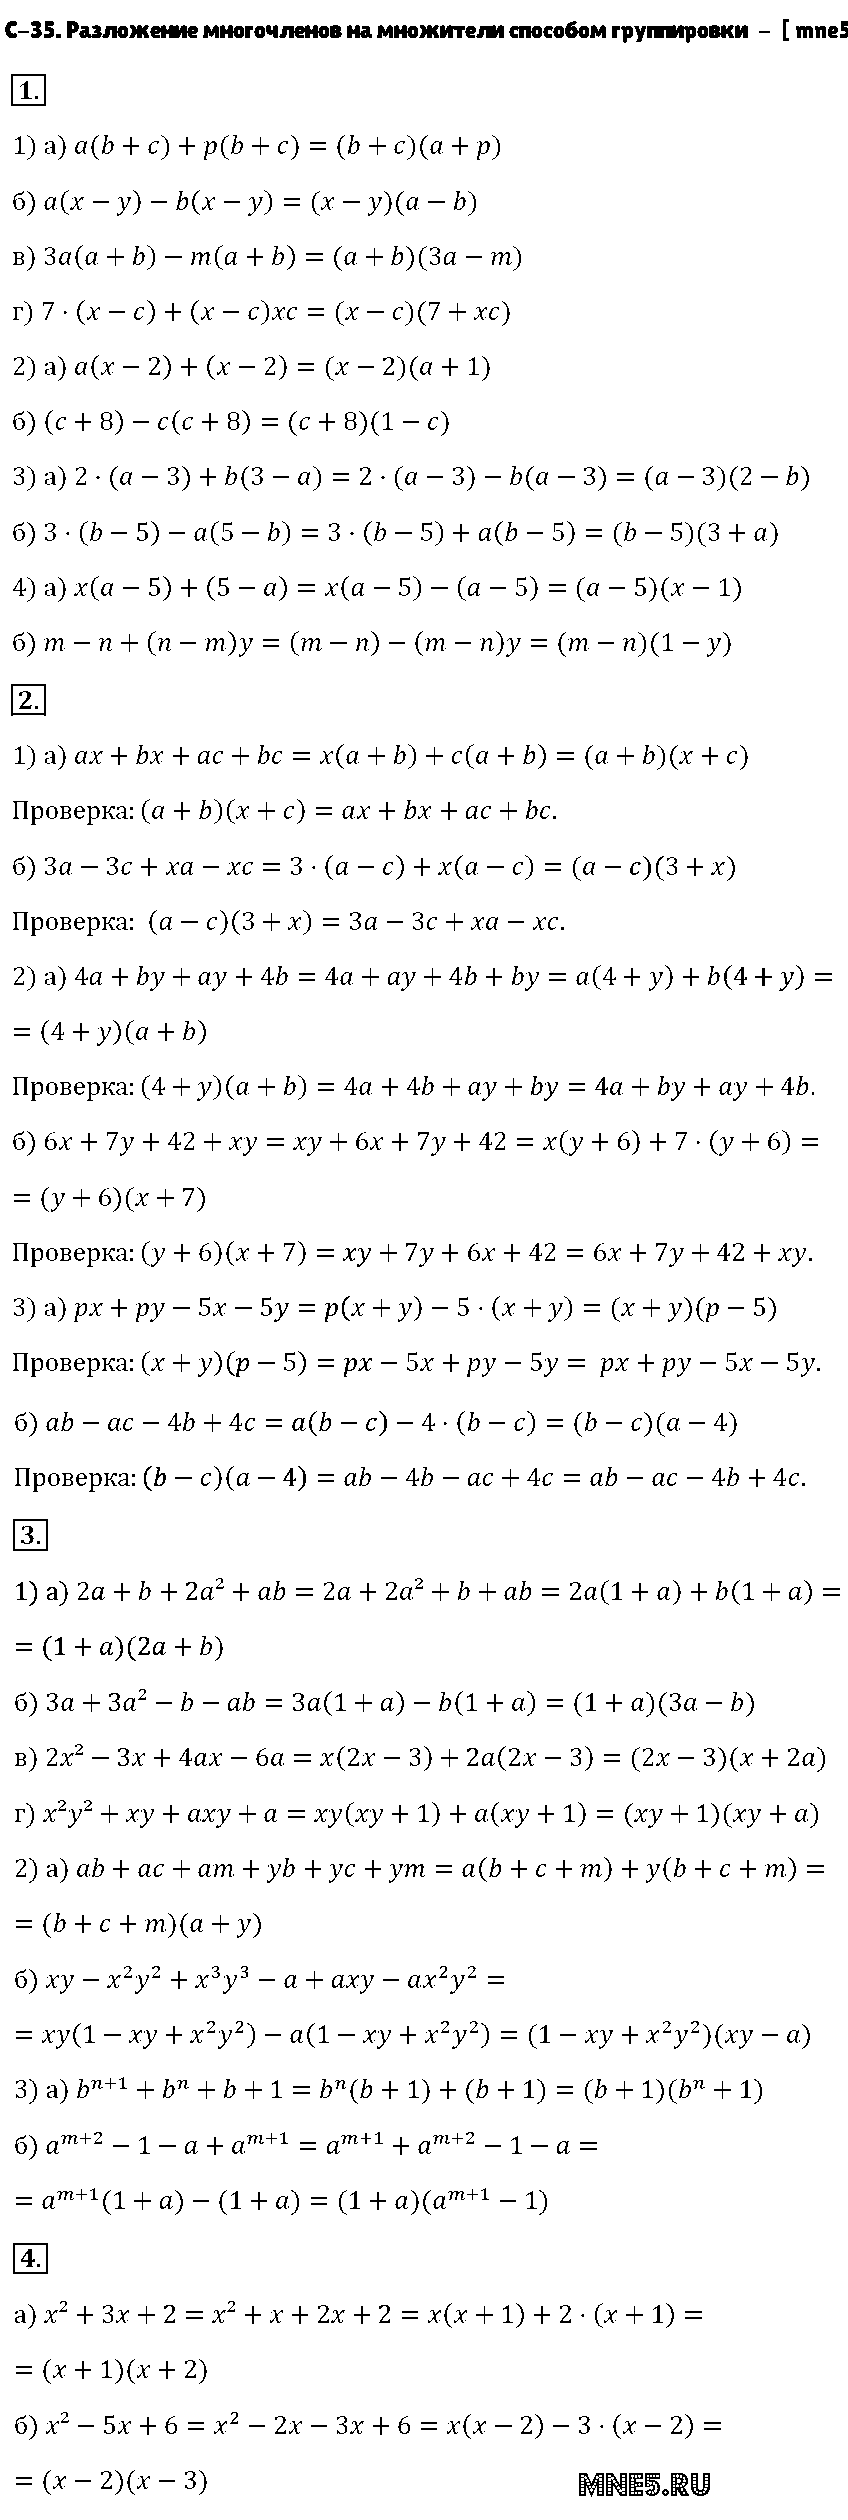 ГДЗ Алгебра 7 класс - С-35. Разложение многочленов на множители способом группировки